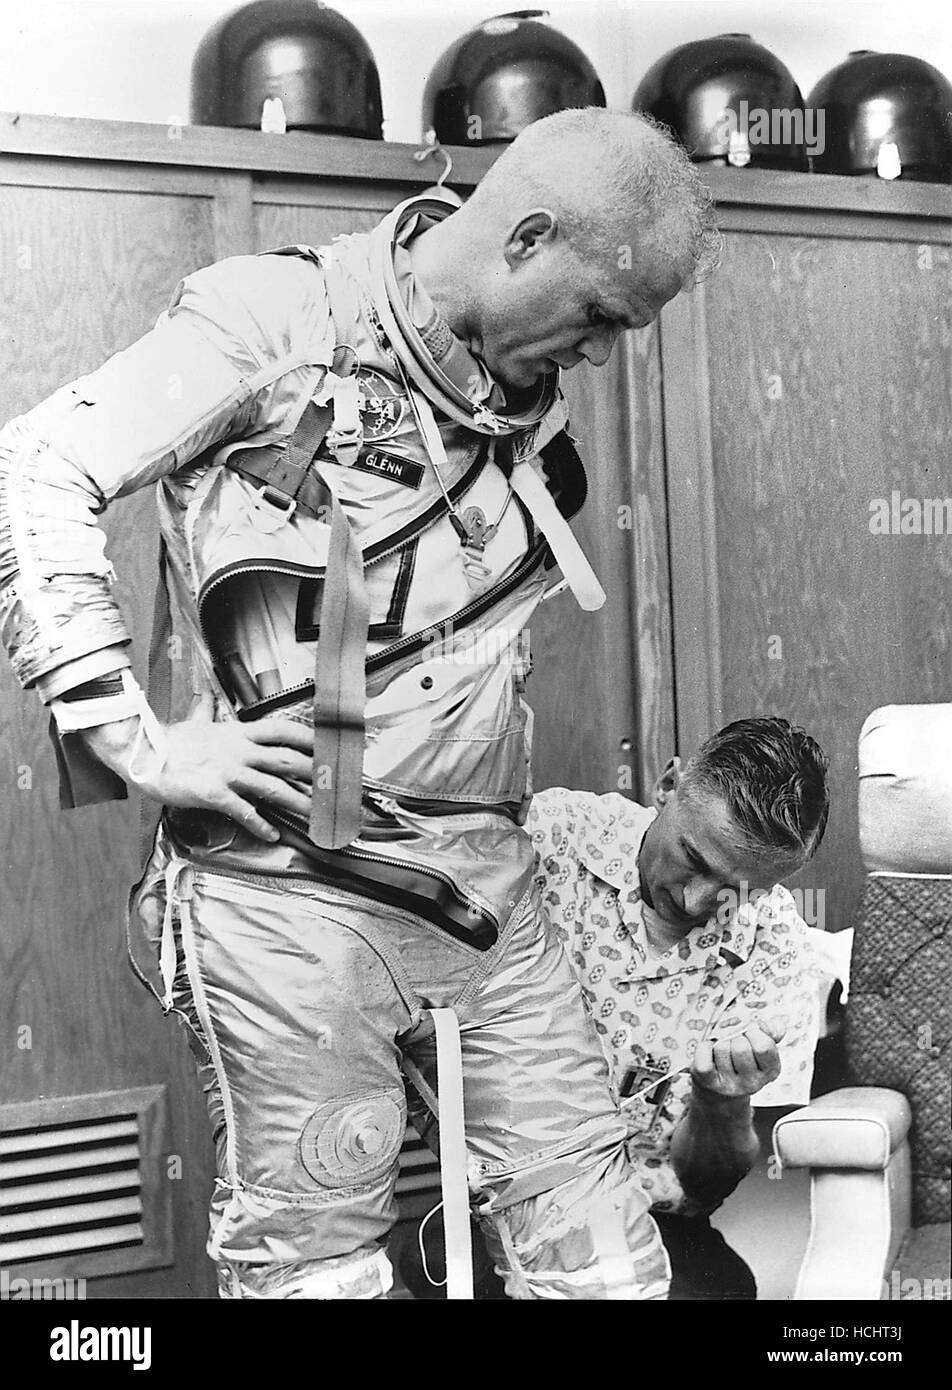 Washington, DC - 19. April 1998--Astronaut John H. Glenn, Jr. wird von Joe W. Schmitt unterstützt, wie er passt sich in der Praxis für die Perparation der Mission Mercury-Atlas 6 (MA-6) in das Bild, das in Cape Canaveral, Florida am 5. Februar 1962.Credit: NASA/CNP - NO-Draht-SERVICE - Foto: Nasa/Consolidated News Fotos/NASA über CNP Stockfoto